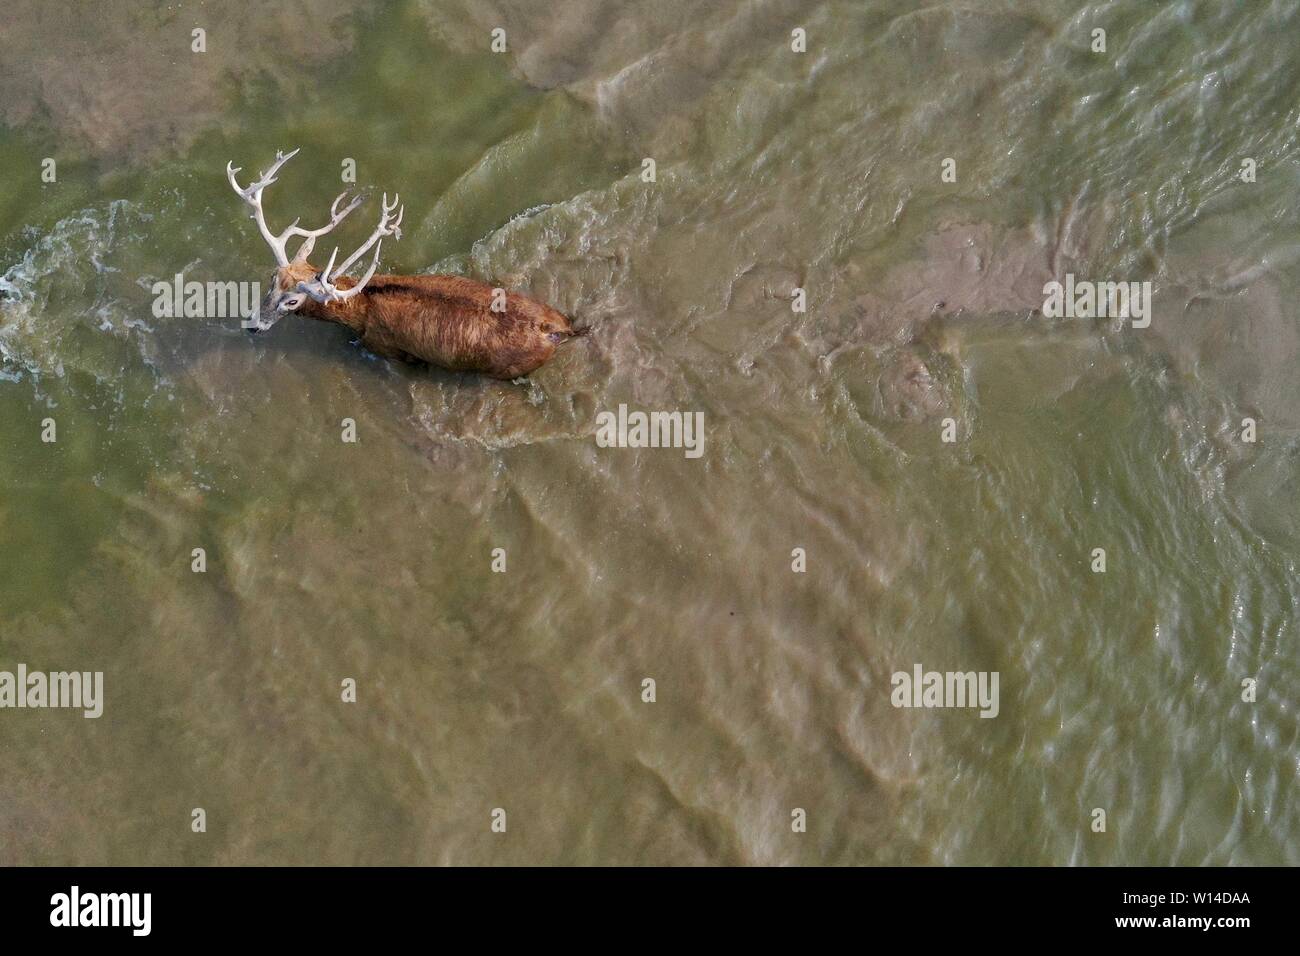 (190630) -- YANCHENG, Giugno 30, 2019 (Xinhua) -- foto aerea adottate il 28 giugno 2019 mostra un milu cervi, noto anche come Pere David cervi, attraversare un fiume in Dafeng Milu Riserva Naturale Nazionale in oriente cinese della provincia di Jiangsu. Milu, una specie endemica di Cina, era sul bordo di estinzione nei primi anni del XX secolo a causa di overhunting e la perdita di habitat. La specie, al di sotto di un livello di protezione dello stato in Cina, è stato chiamato dopo Armand David, un missionario francese e naturalista che per primo si è registrato l'esistenza del cervo in Cina nel 1865. Dal momento che il governo britannico ha regalato 39 milu cervi di Dafeng Foto Stock